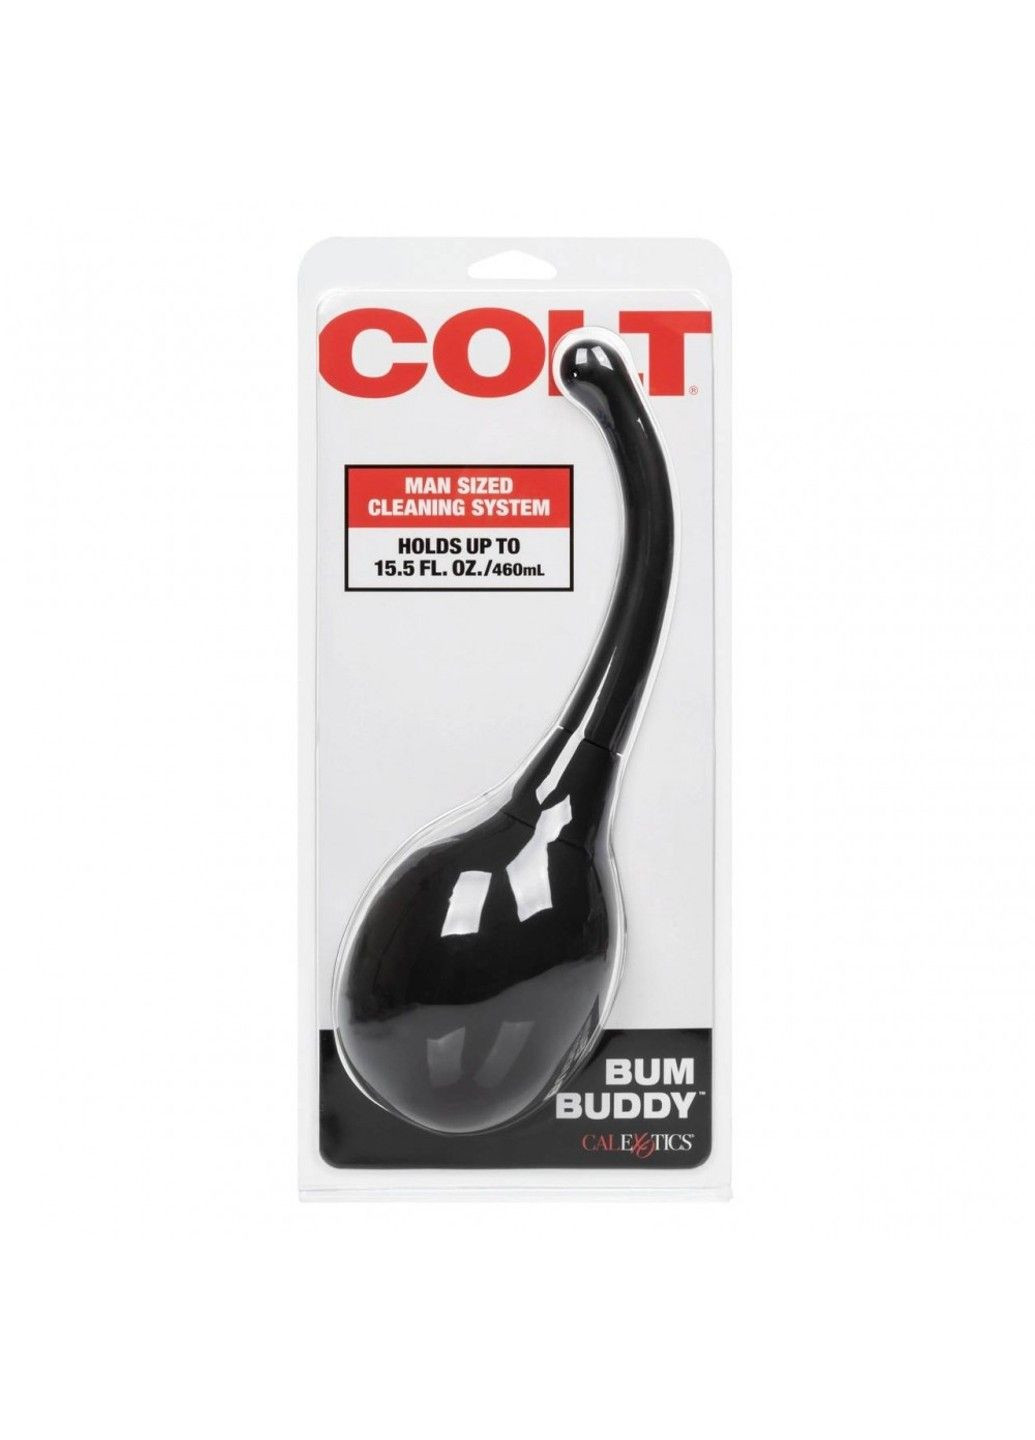 Анальный душ COLT Bum Buddy на 465 мл, черного цвета California Exotic (289784530)